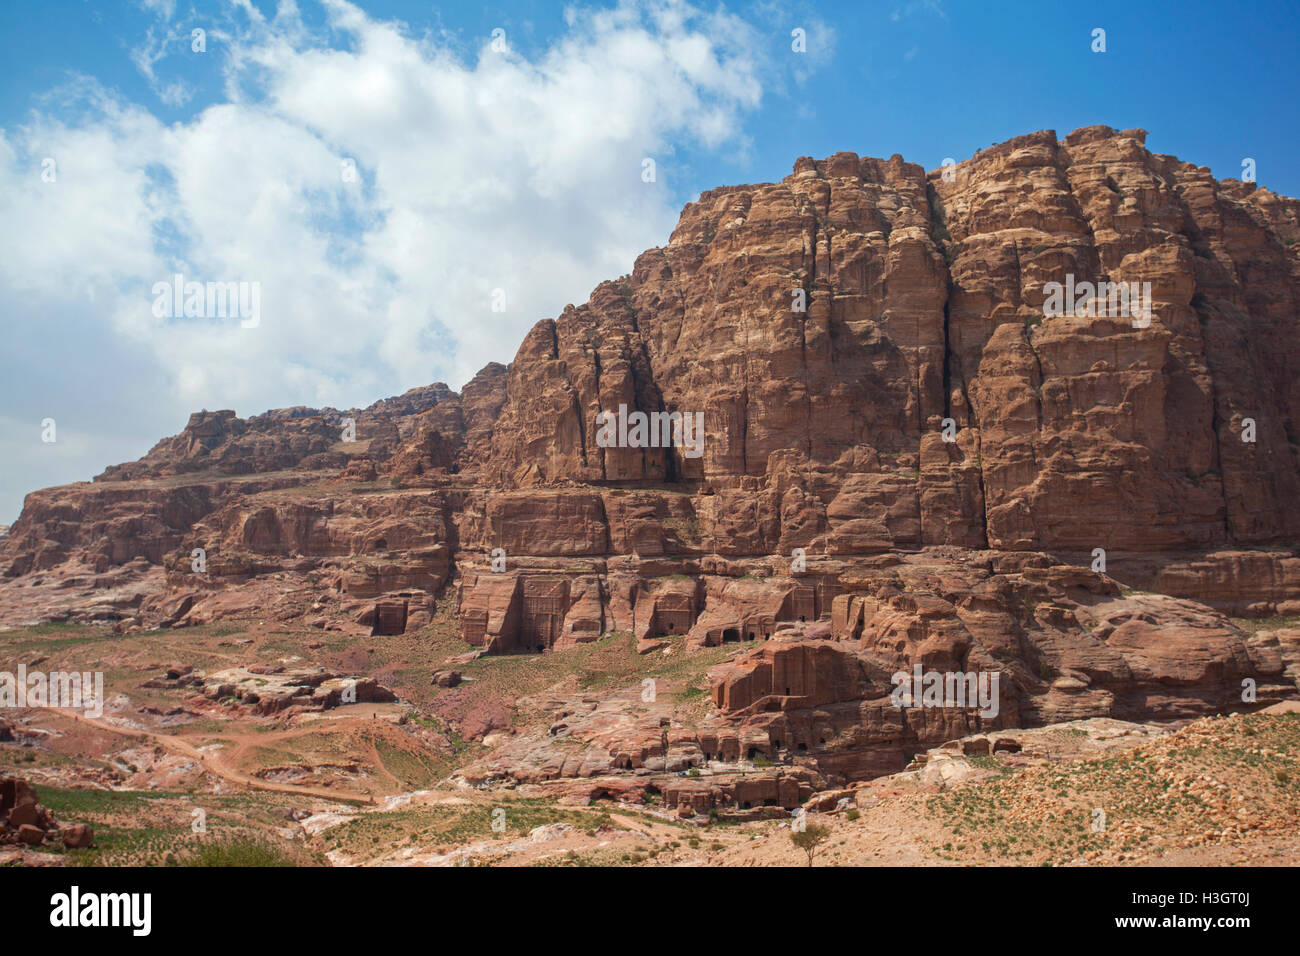 Vista de una montaña rocosa con muchas tumbas Nabateas antiguas talladas en la piedra, dentro del sitio arqueológico de Petra, Jordania. Foto de stock